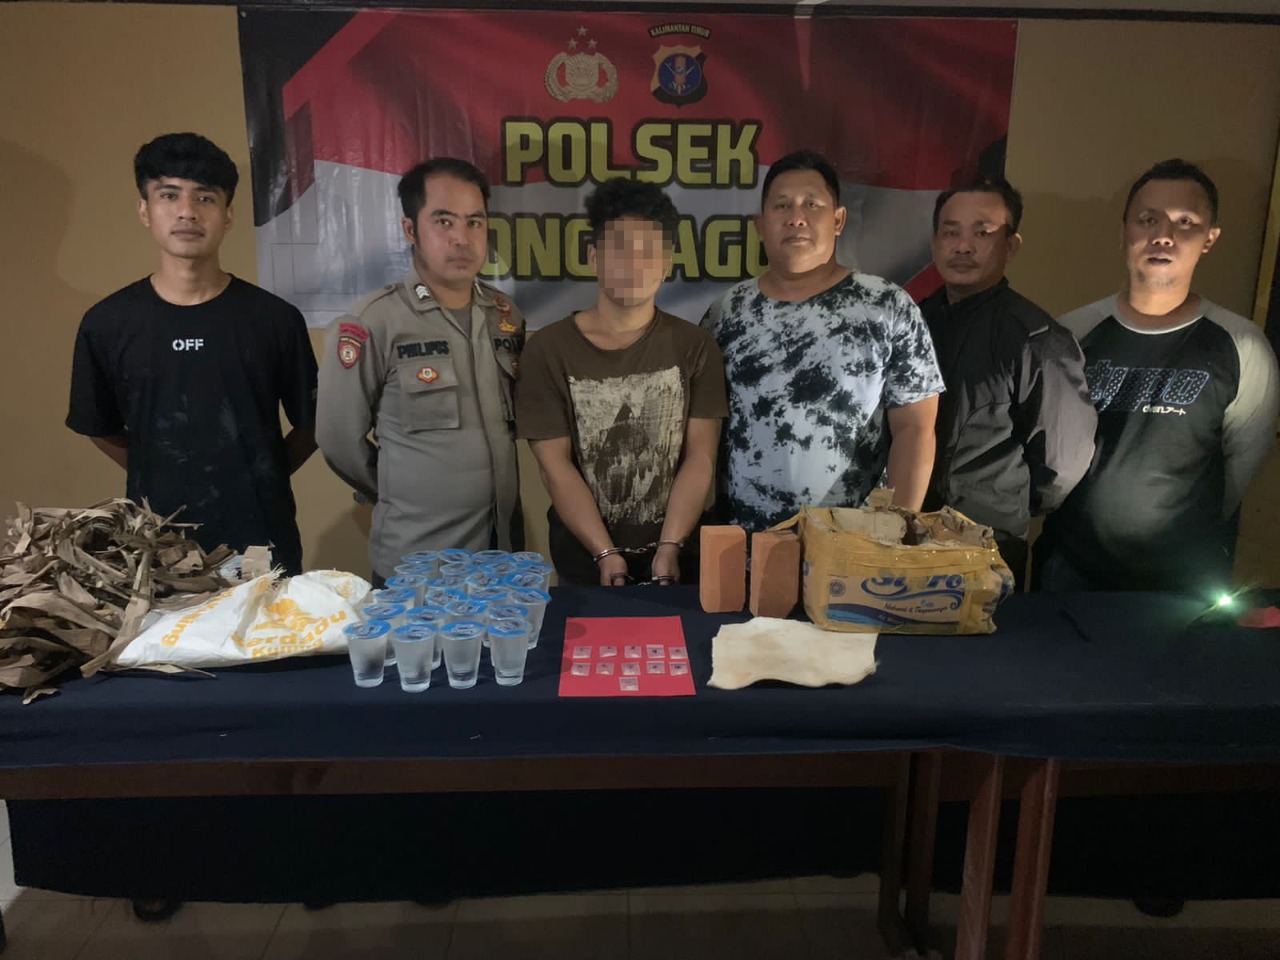 Polsek Long Bagun Kabupaten Mahakam Ulu Berhasil Ungkap Kasus Narkotika Jenis Sabu – Sabu Seberat 5,6 Gram